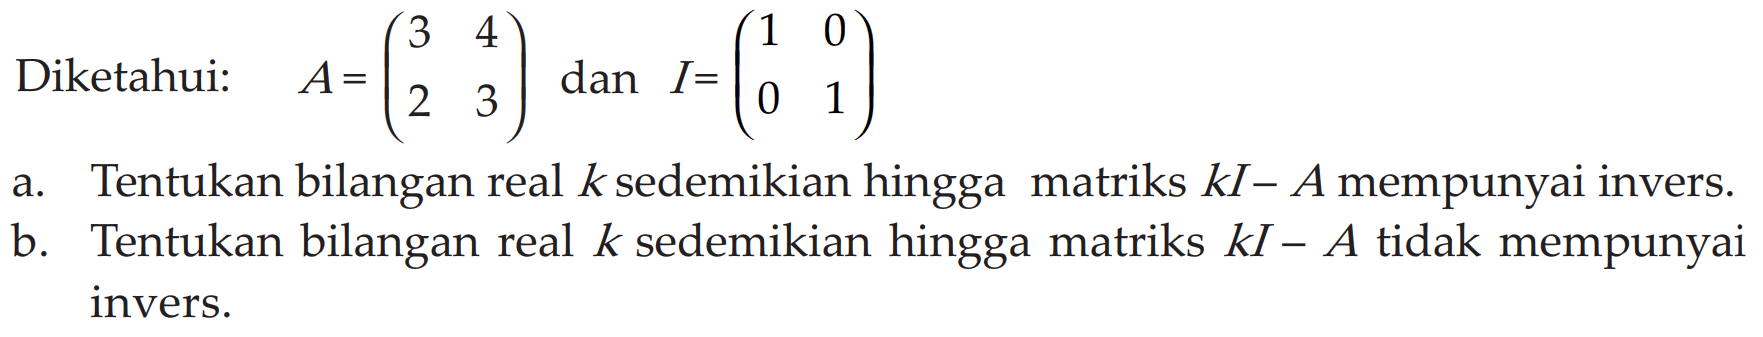 Diketahui: A= (3 4 2 3) dan I= (1 0 0 1) a. Tentukan bilangan real k sedemikian hingga matriks kI-A mempunyai invers. b. Tentukan bilangan real k sedemikian hingga matriks kI-A tidak mempunyai invers.